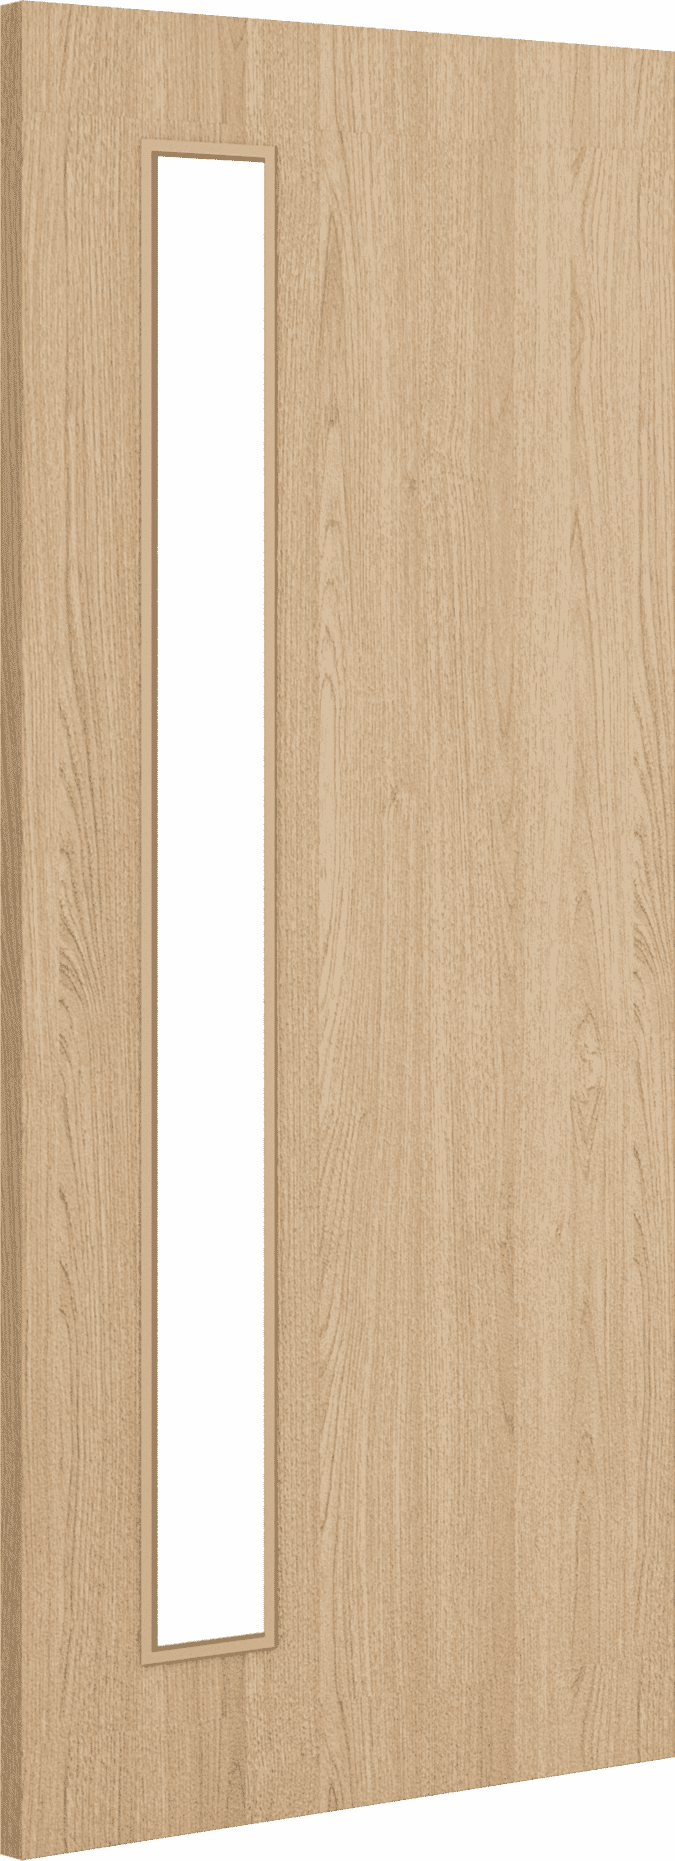 2040mm x 826mm x 54mm Architectural Oak 06 Clear Glazed - Prefinished FD60 Fire Door Blank